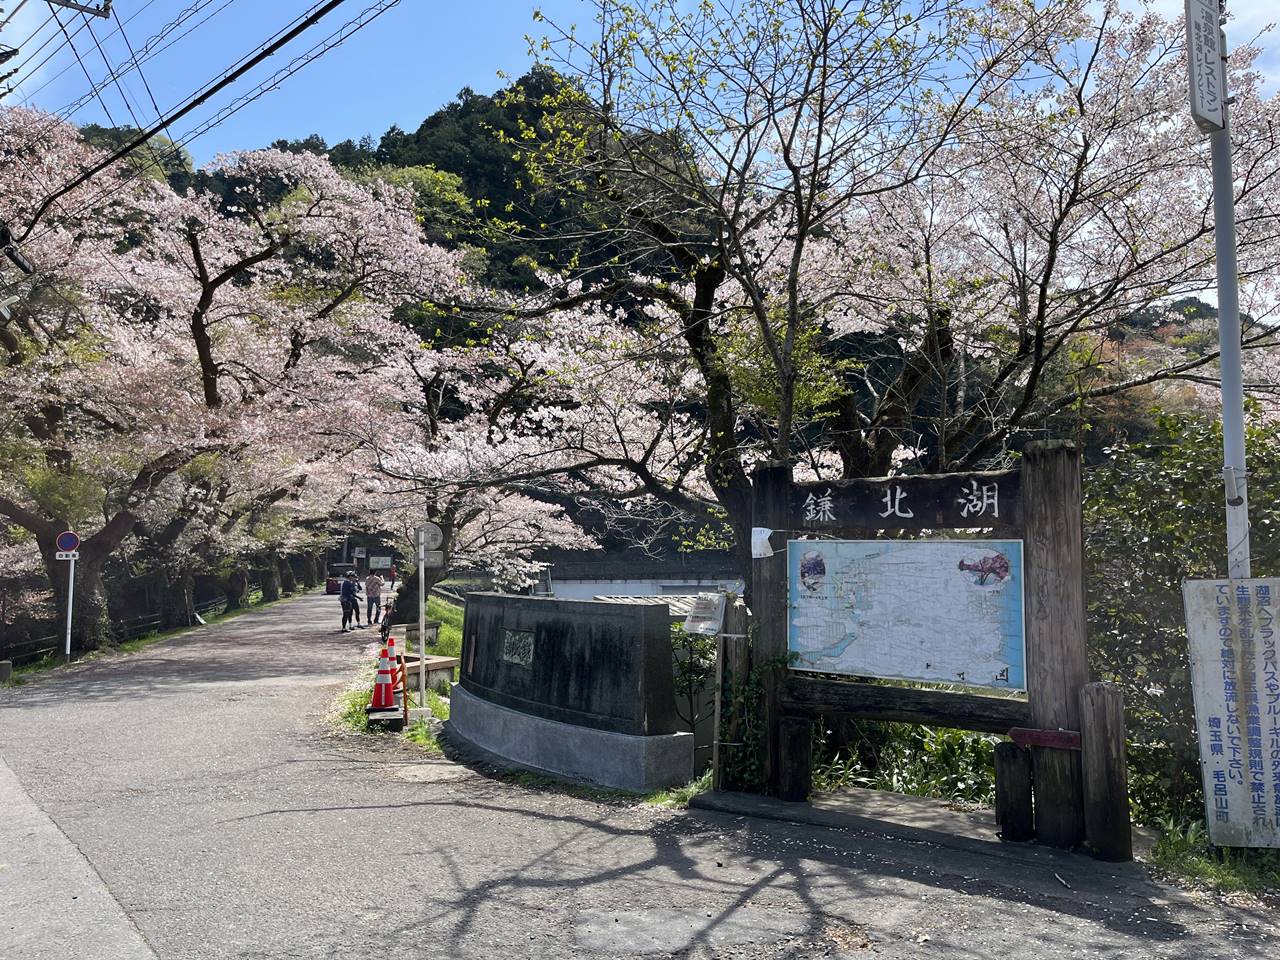 【奥武蔵】鎌北湖 満開の桜咲く 春のハイキング